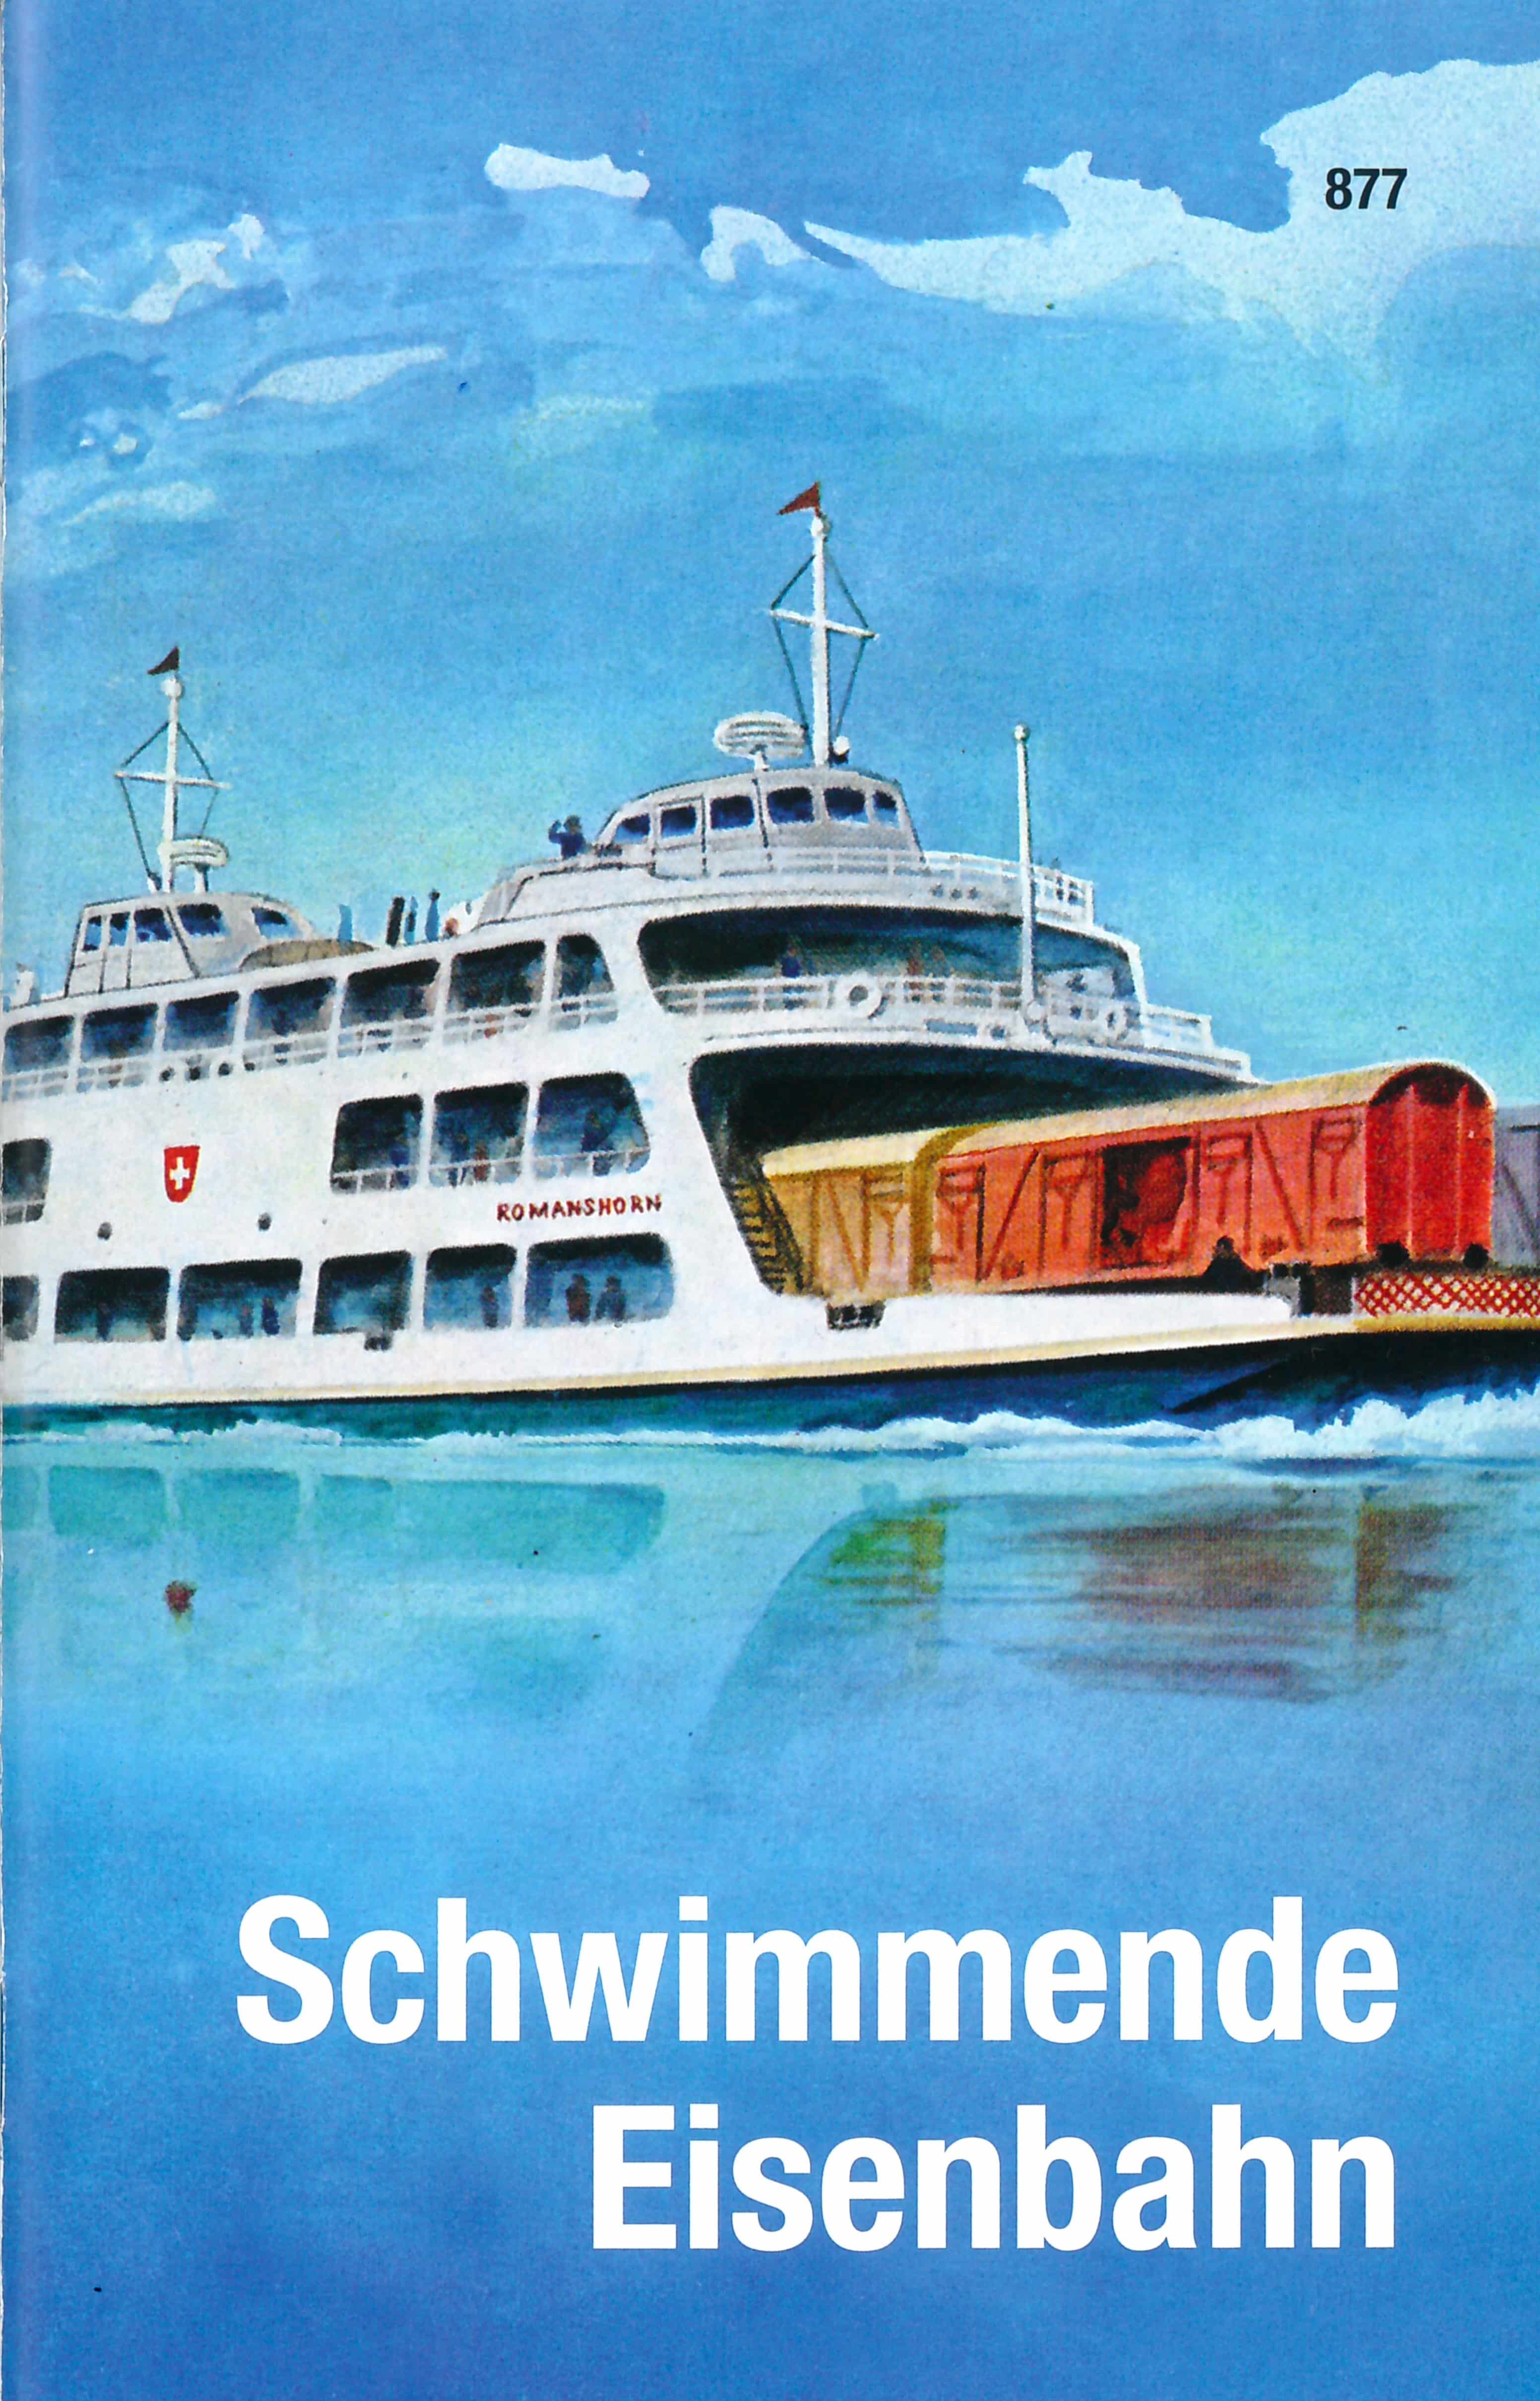 Schwimmende Eisenbahn, Bastelbogenbuch von Fritz Aebli, Illustration von Rudolf Mueller, SJW Verlag, Basteln, Schweiz